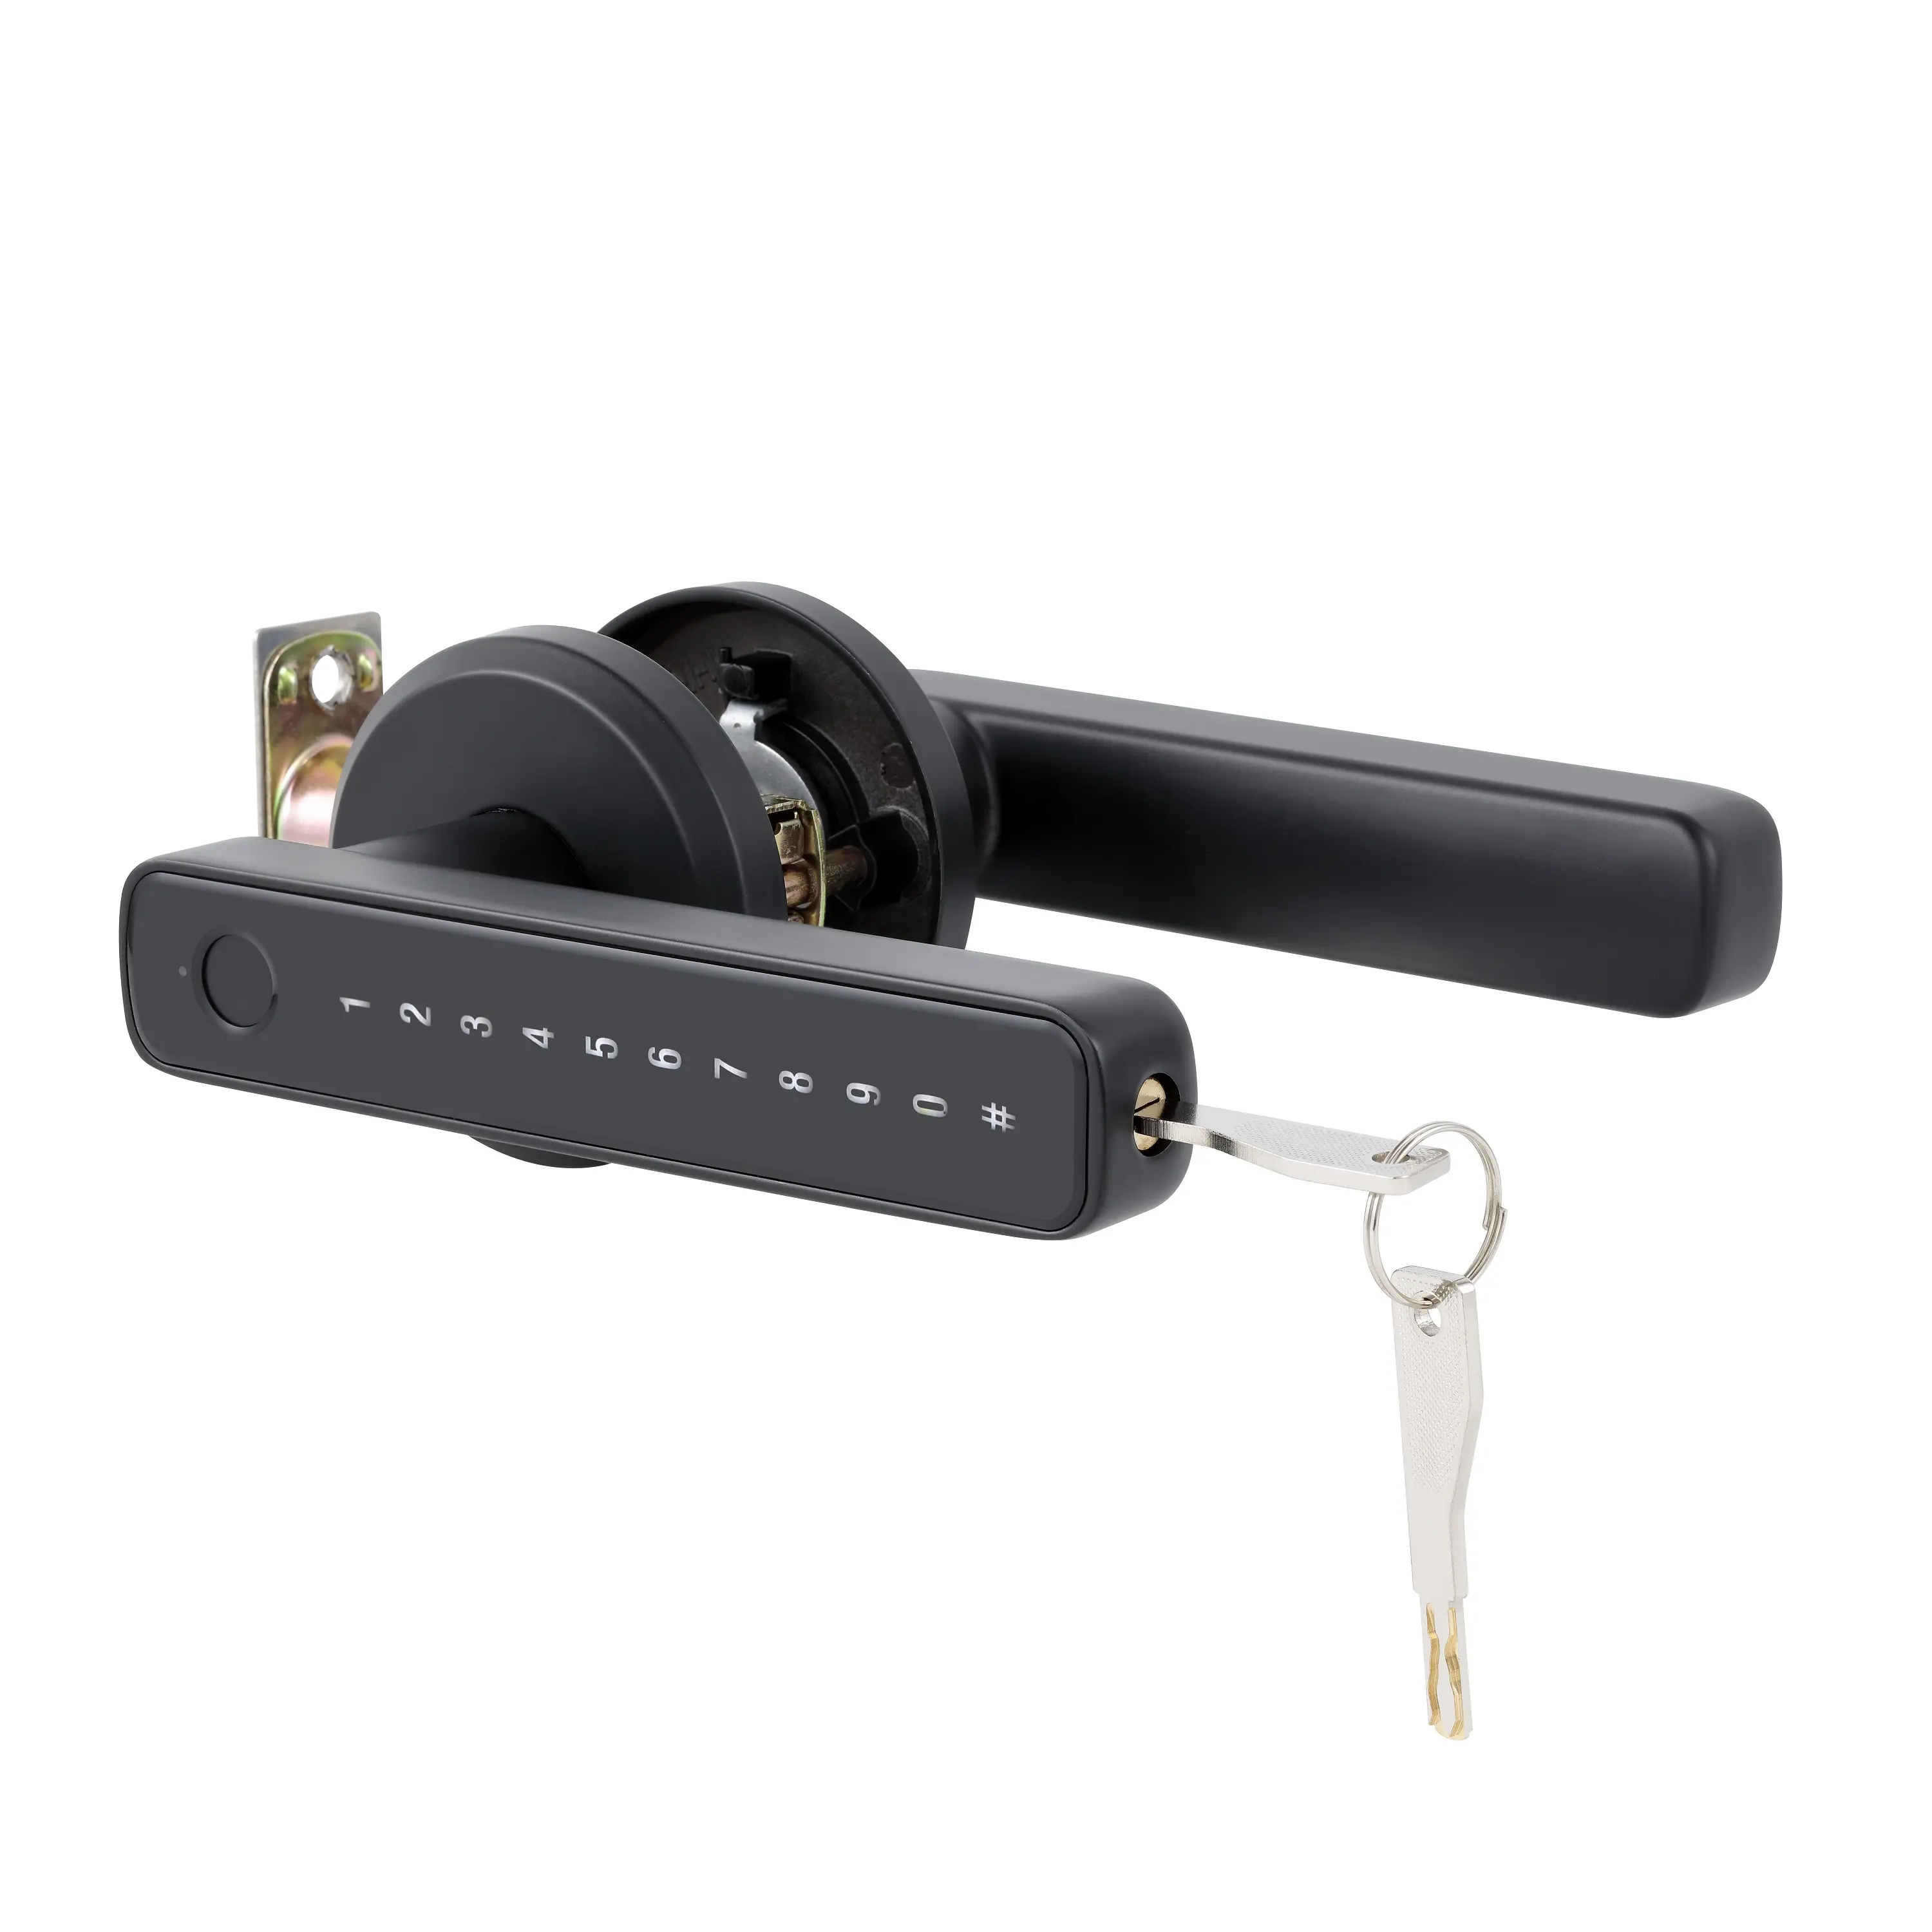 Automatic Door Lock System Intelligent Password Lock Fingerprint Electronic Smart Doorlock